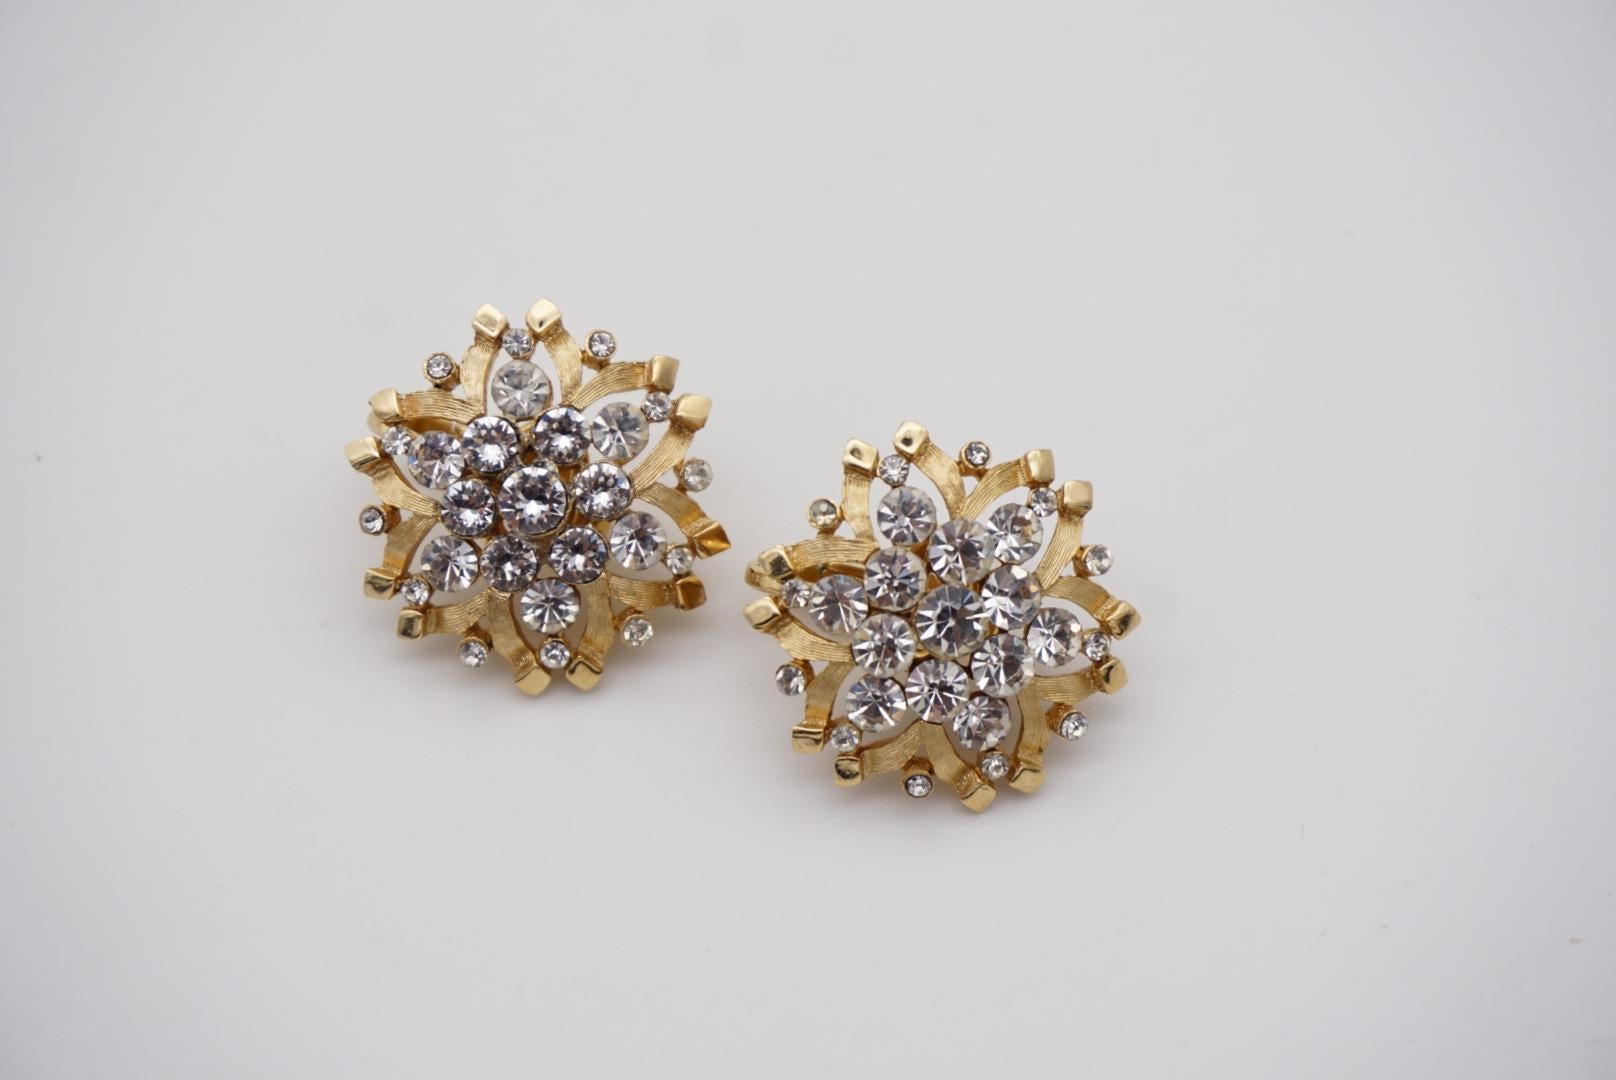 Crown Trifari Vintage 1950s Snowflakes Crystals Jewellery Set Earrings Brooch For Sale 9